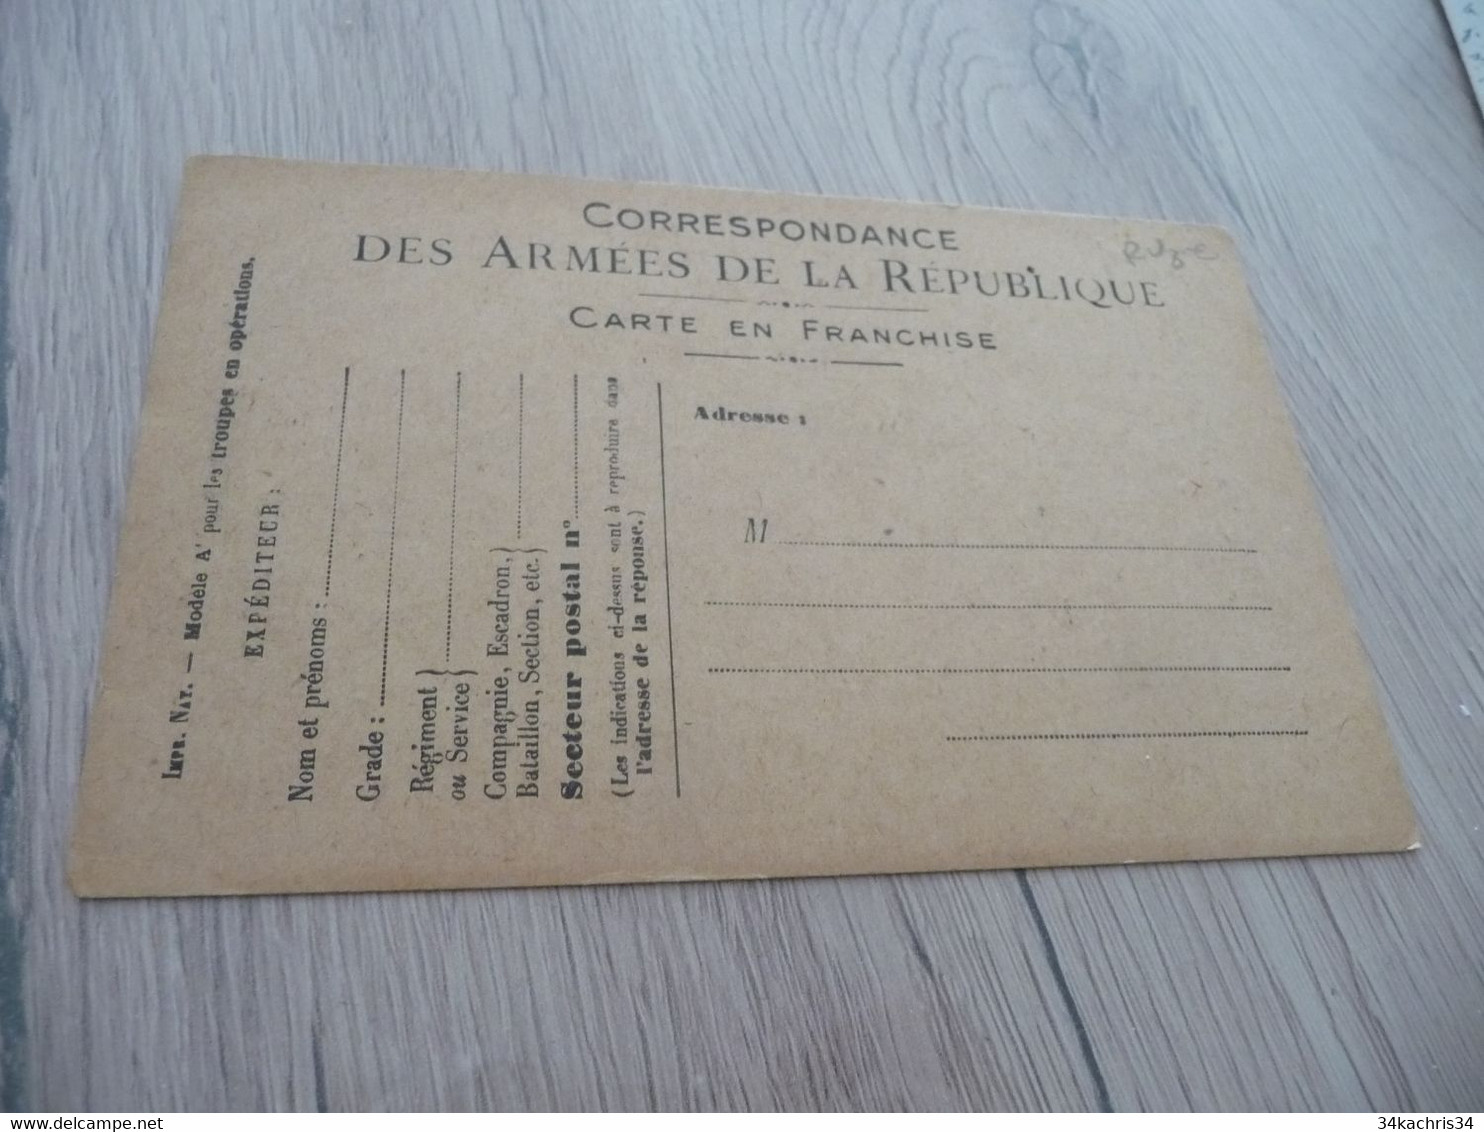 CPFM Carte Postale Franchise Militaire Guerre 14/18 Illustre Vierge Emprunt Vierge - Brieven En Documenten